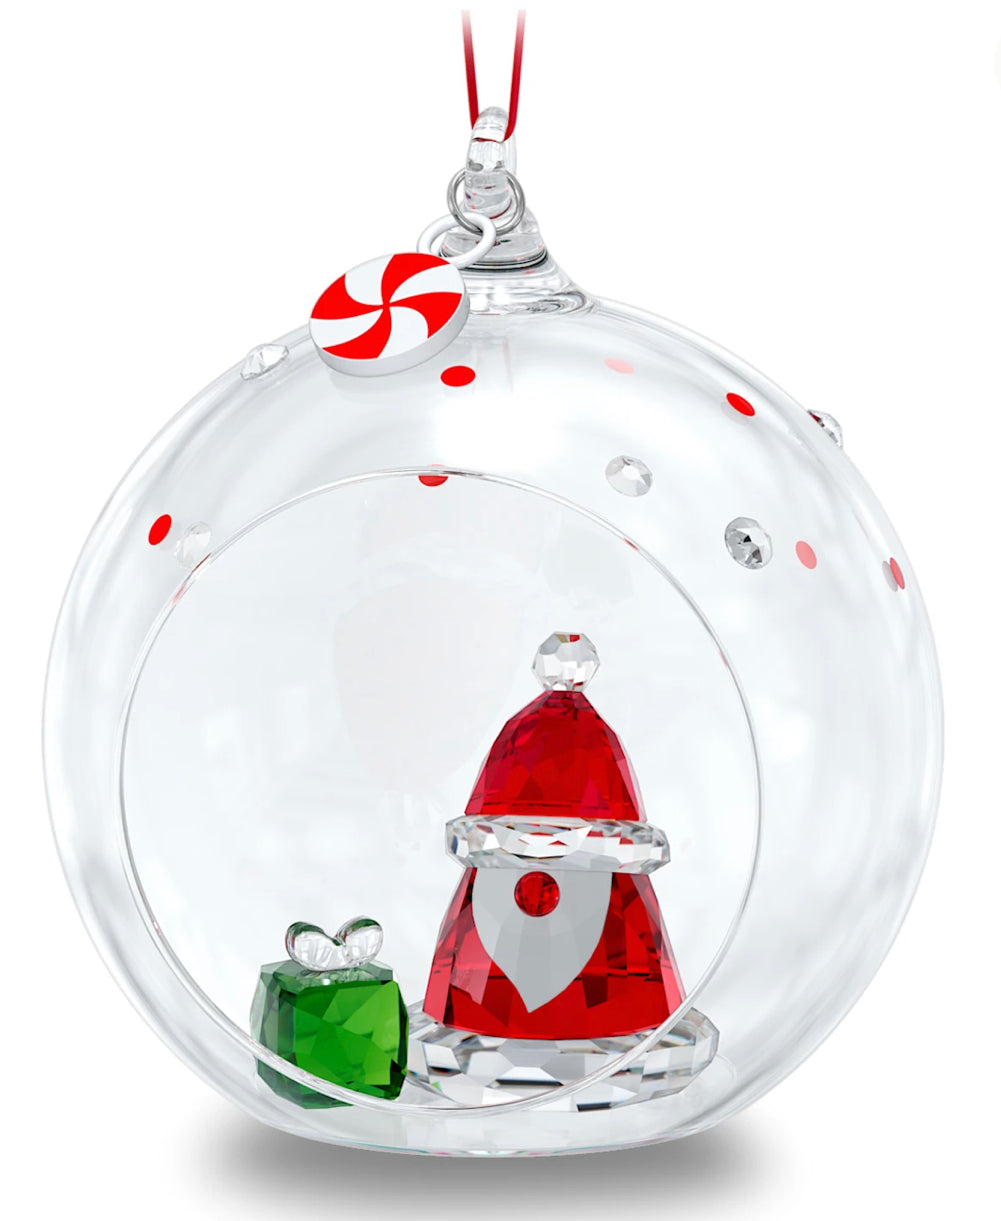 Swarovski Holiday Cheers: Ball Ornament Santa Claus 5596382- Discontinued